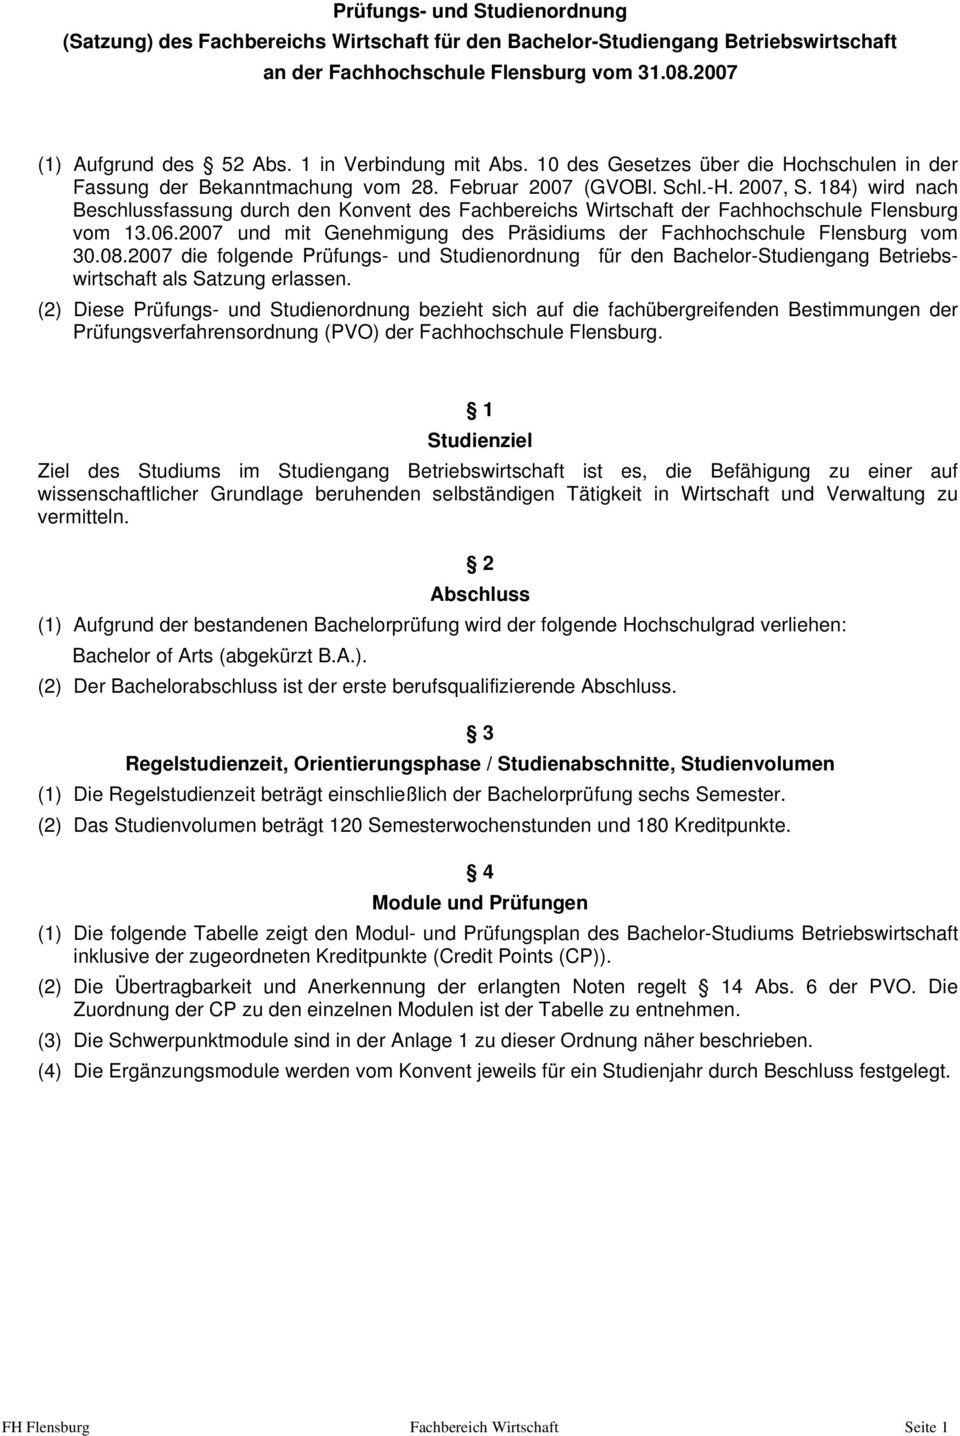 184) wird nach Beschlussfassung durch den Konvent des Fachbereichs Wirtschaft der Fachhochschule Flensburg vom 13.06.2007 und mit Genehmigung des Präsidiums der Fachhochschule Flensburg vom 30.08.